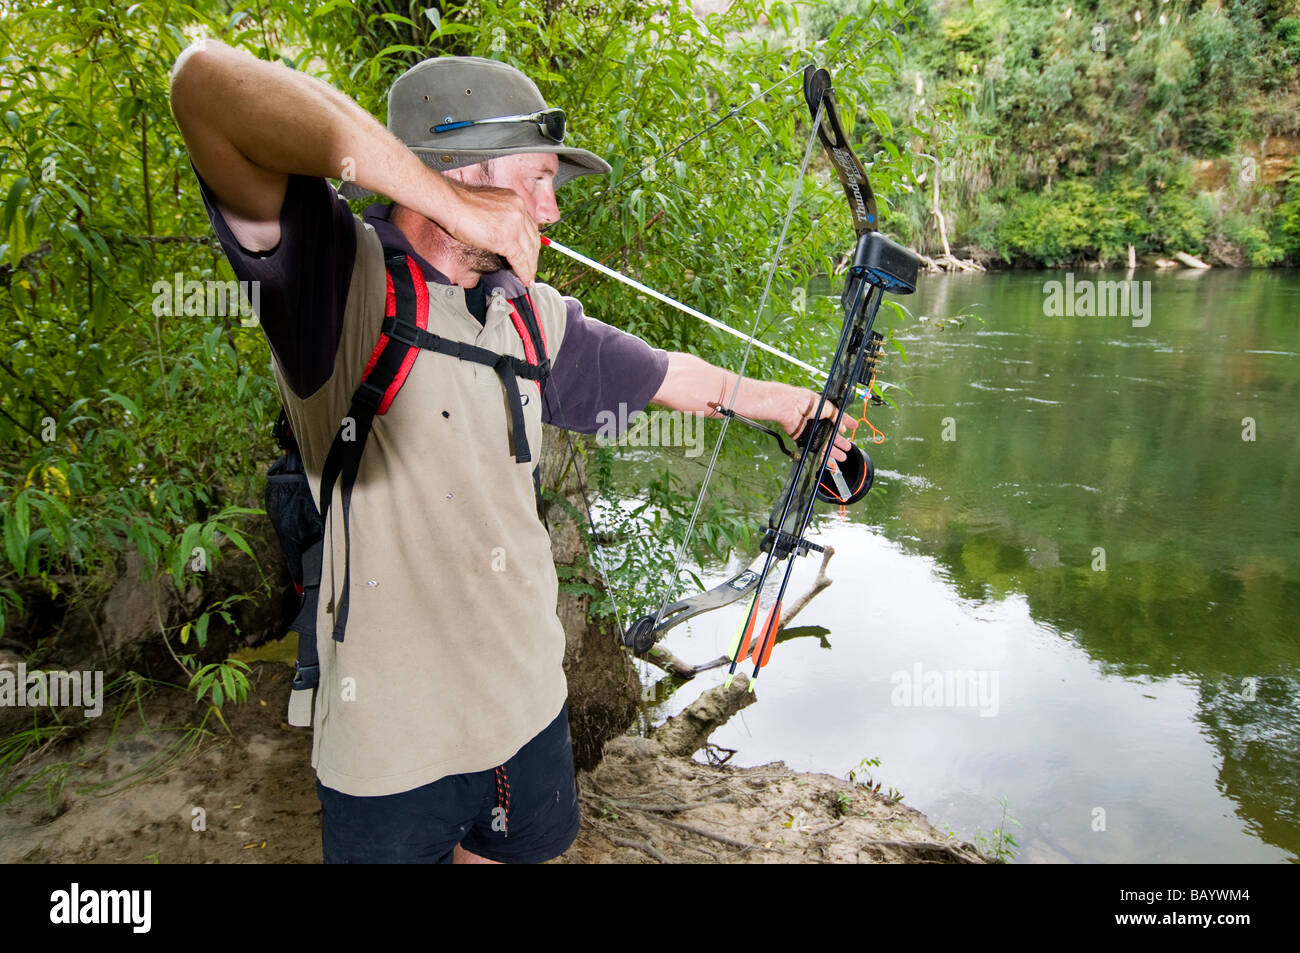 Mann Jagd Fisch mit Pfeil und Bogen an Schnur befestigt Stockfotografie -  Alamy